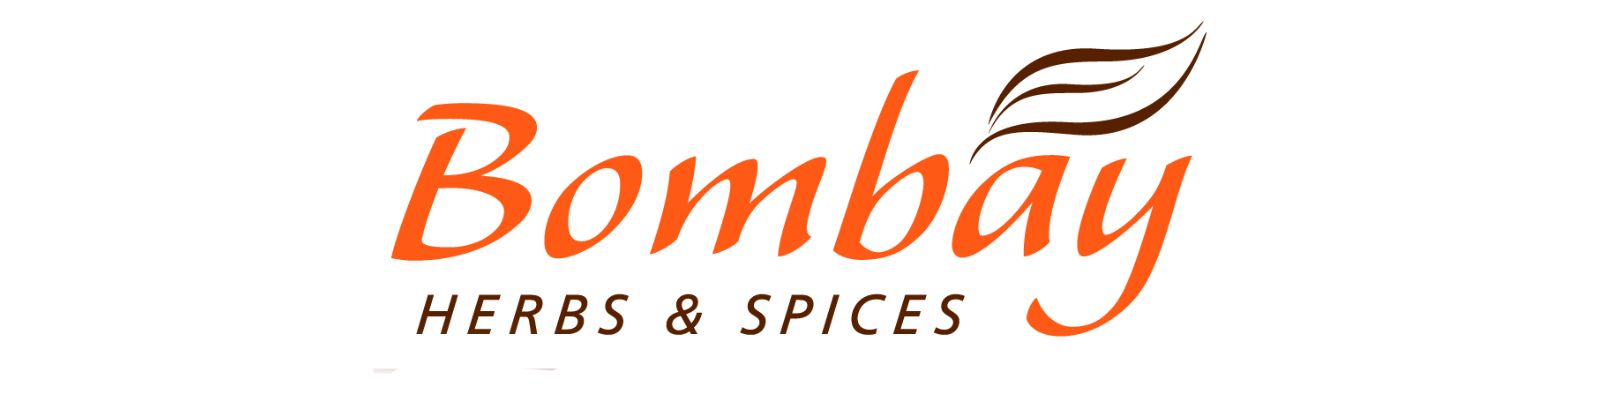 Bombay Herbs & Spices é confiável? Descubra agora mesmo!